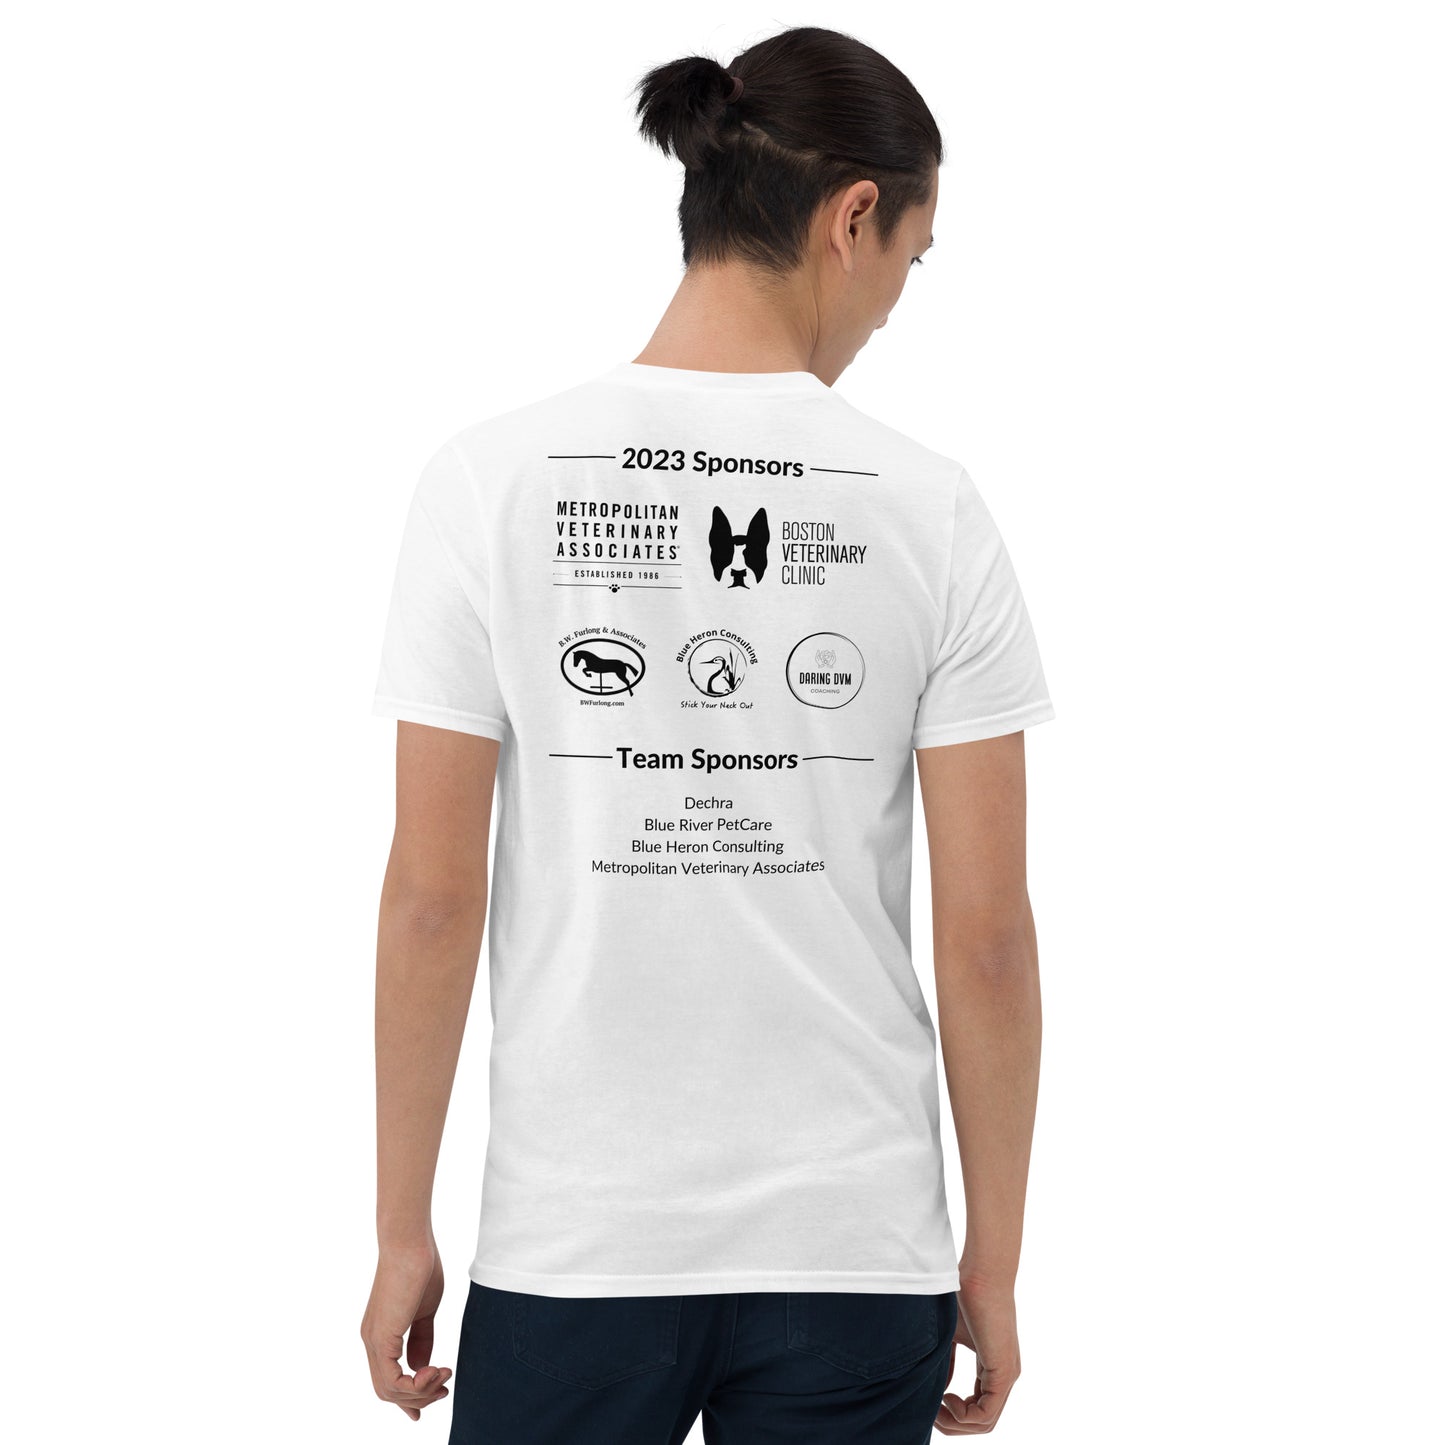 RATW23 - Europe, Asia, & Africa Gildan Participant T-Shirt